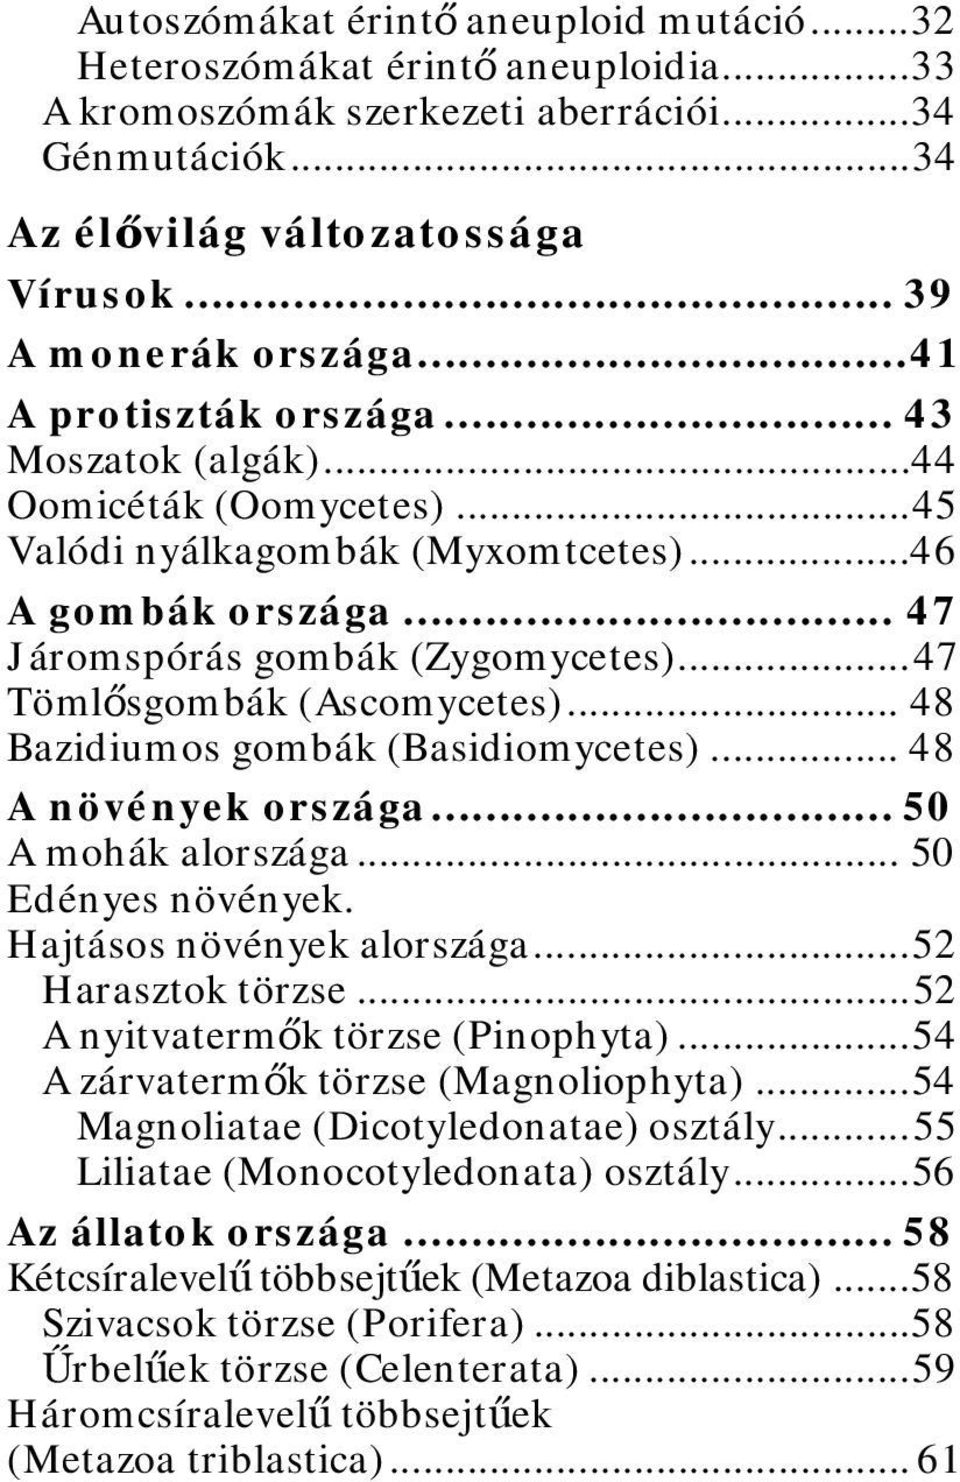 .. 47 Járomspórás gombák (Zygomycetes)... 47 Tömlősgombák (Ascomycetes)... 48 Bazidiumos gombák (Basidiomycetes)... 48 A növények országa... 50 A mohák alországa... 50 Edényes növények.